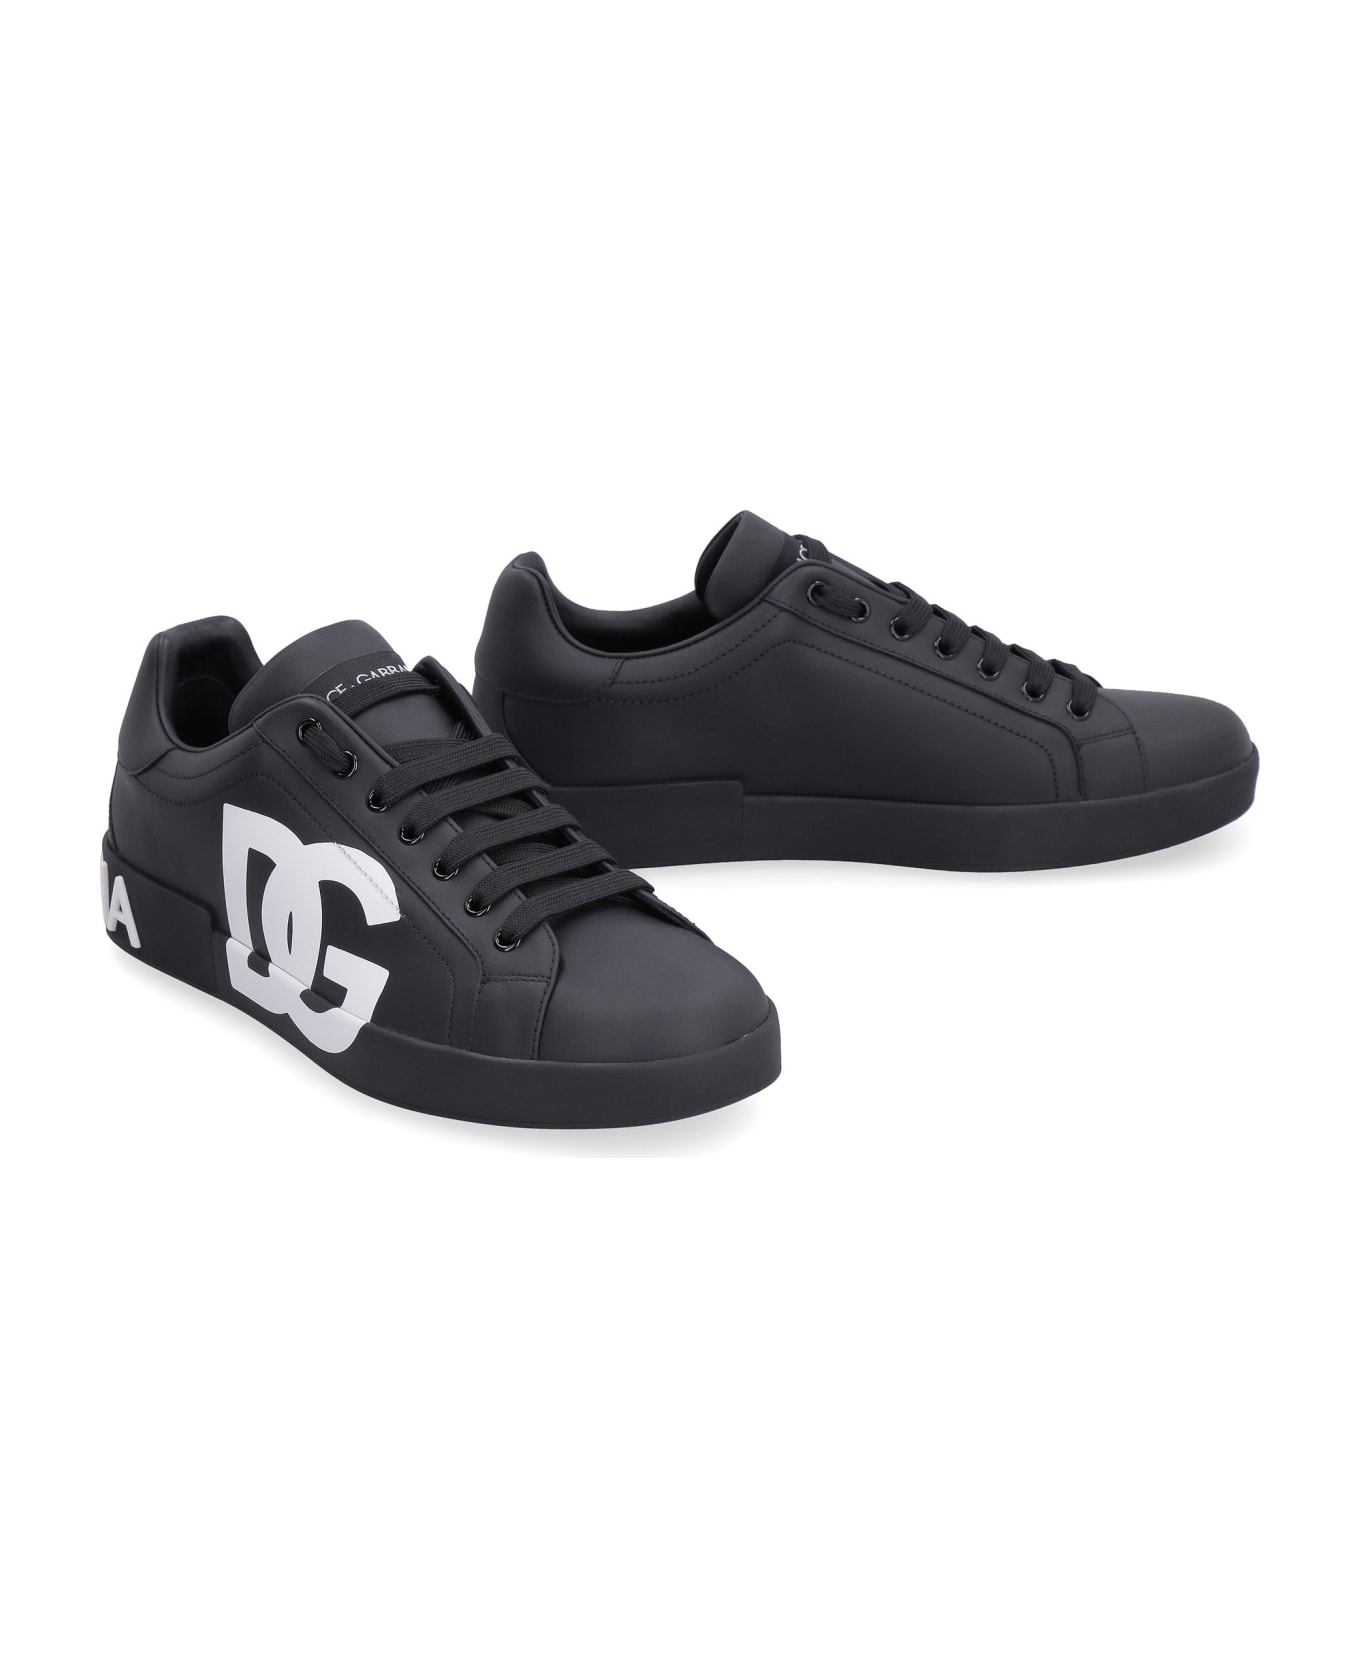 Dolce & Gabbana Portofino Leather Sneakers - black